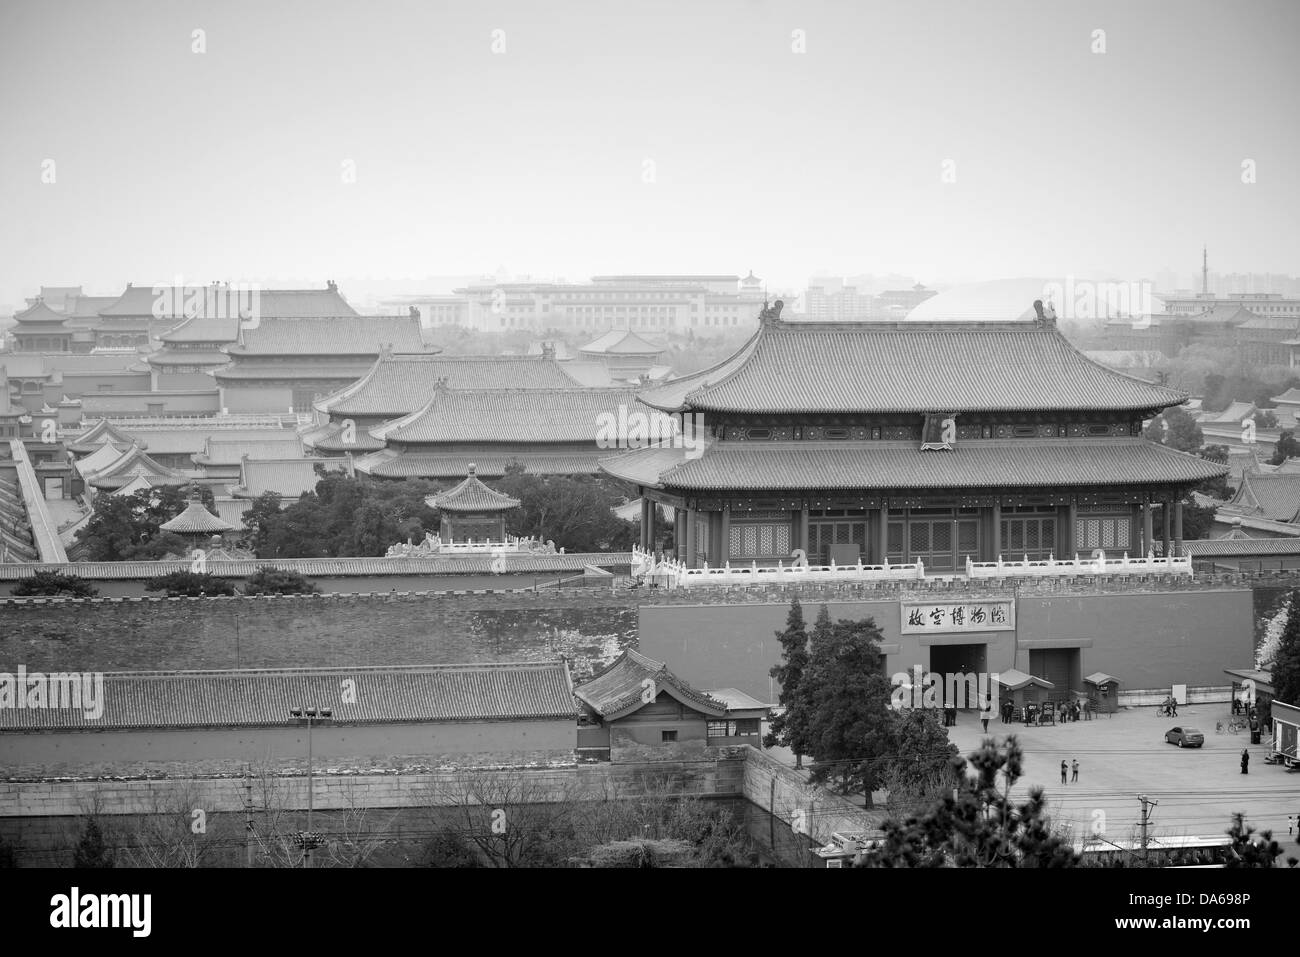 Luftaufnahme des Imperial Palace in schwarz und weiß in Peking, China. Stockfoto